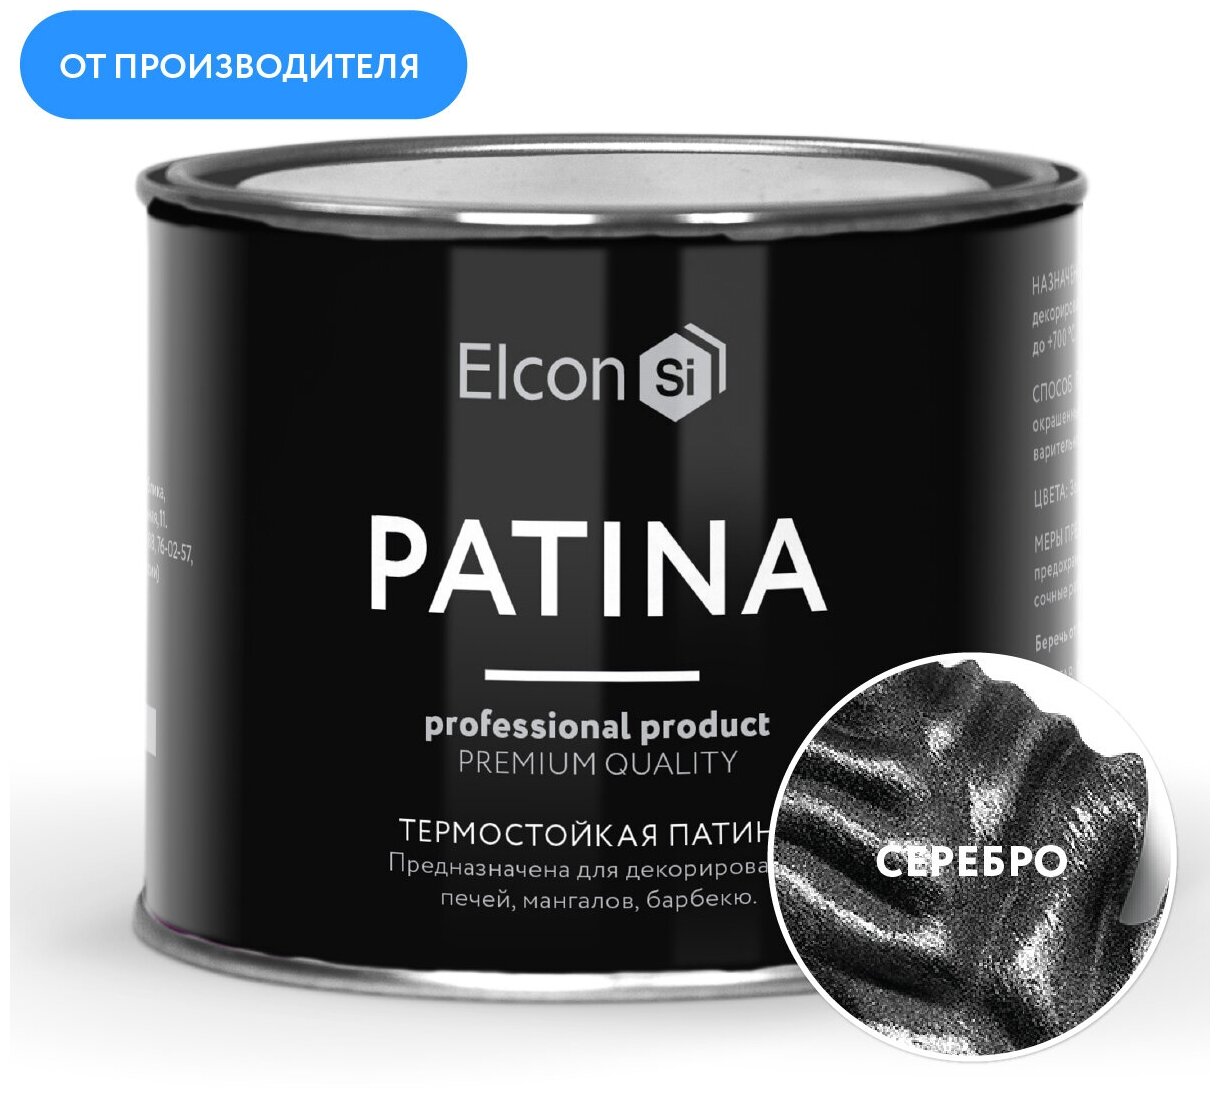 Термостойкая патина для металла Elcon Patina серебро до 700 градусов, 0,2 кг